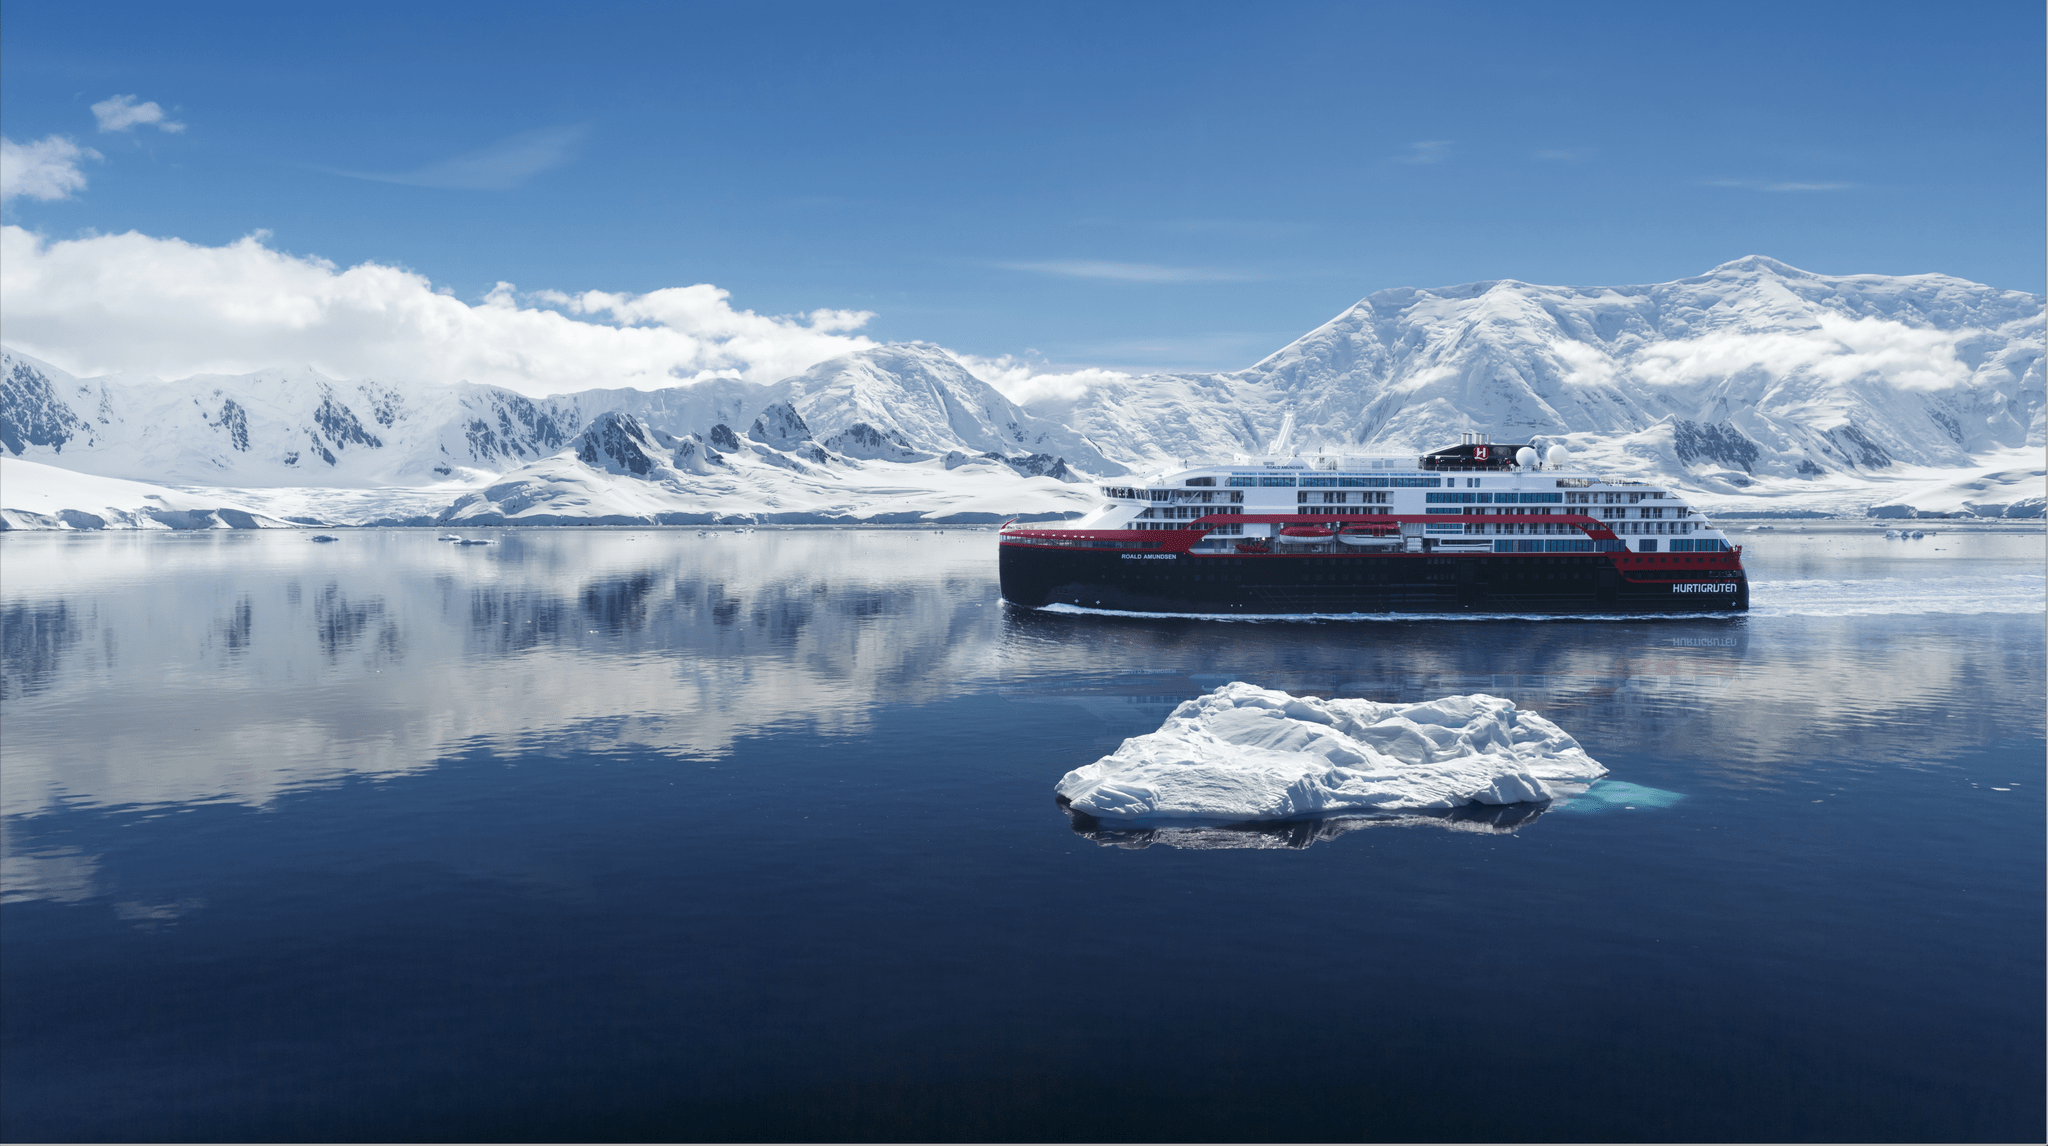 Hurtigruten hat eine 93-tägige Expeditionskreuzfahrt von Pol zu Pol vorgestellt: Start am 8. August 2022 in Vancouver, Zielhafen Buenos Aires